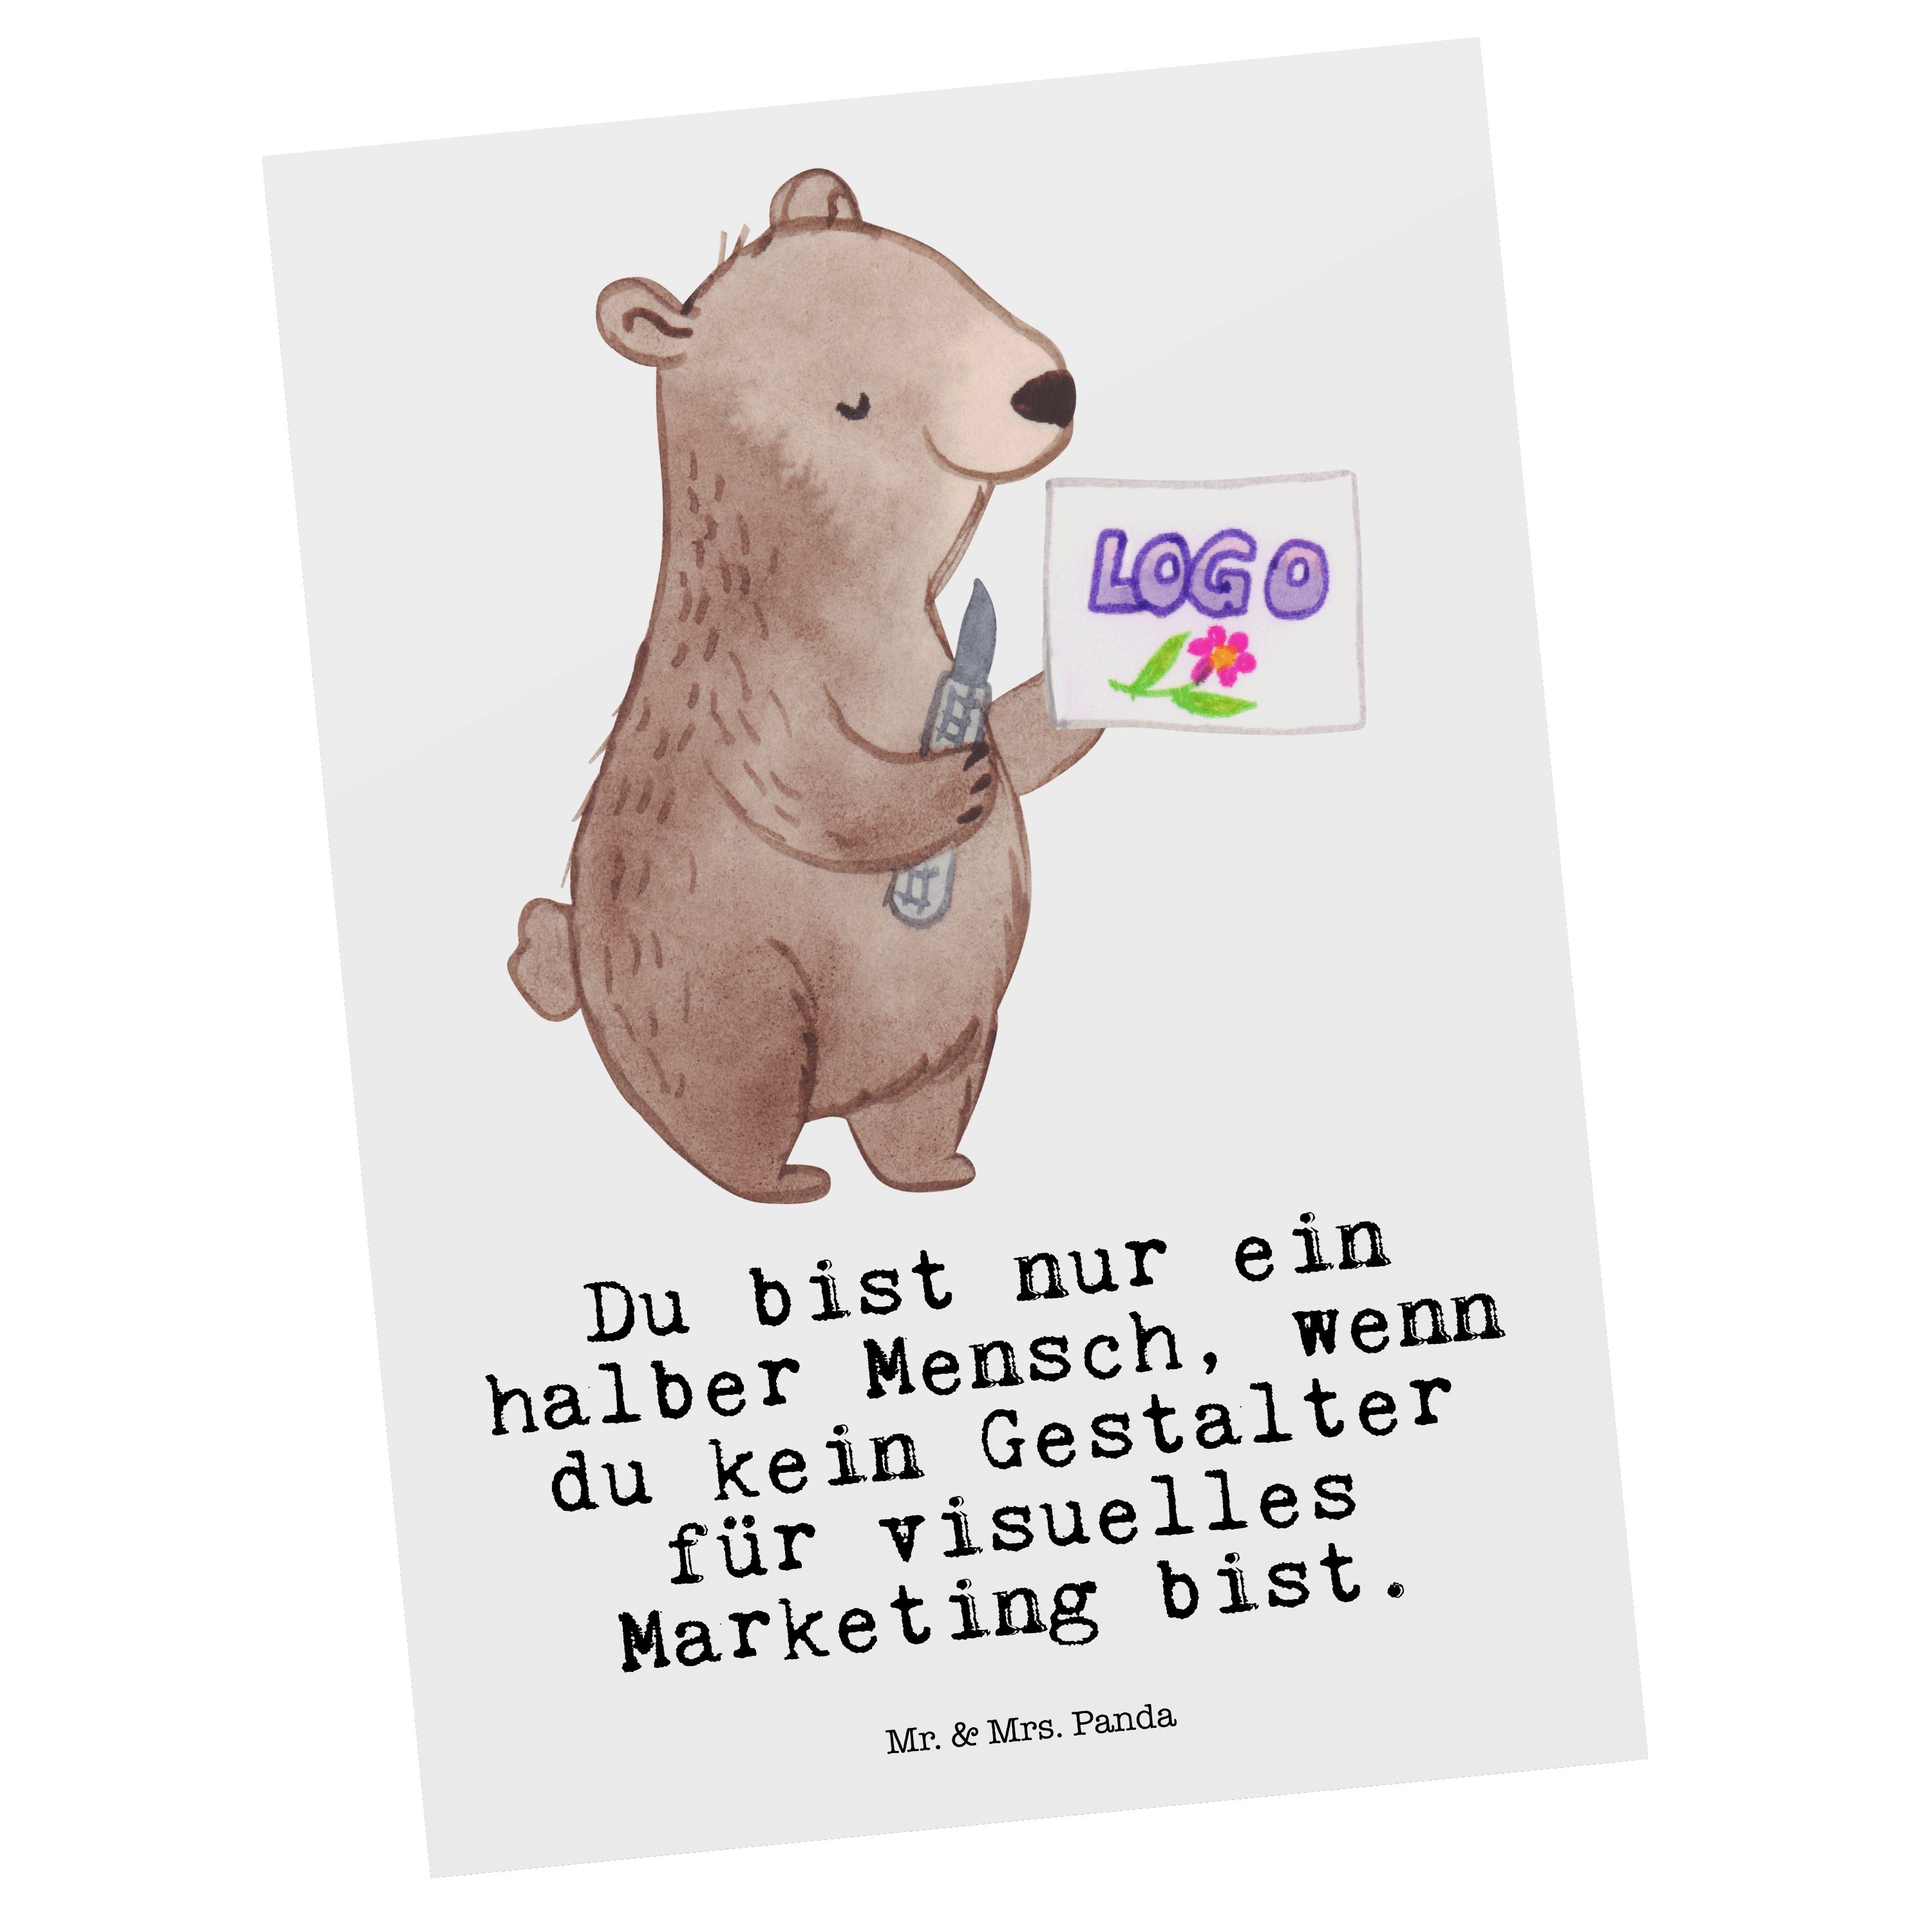 Mr. & Mrs. Panda Postkarte Gestalter für visuelles Marketing mit Herz - Weiß - Geschenk, Grußkar